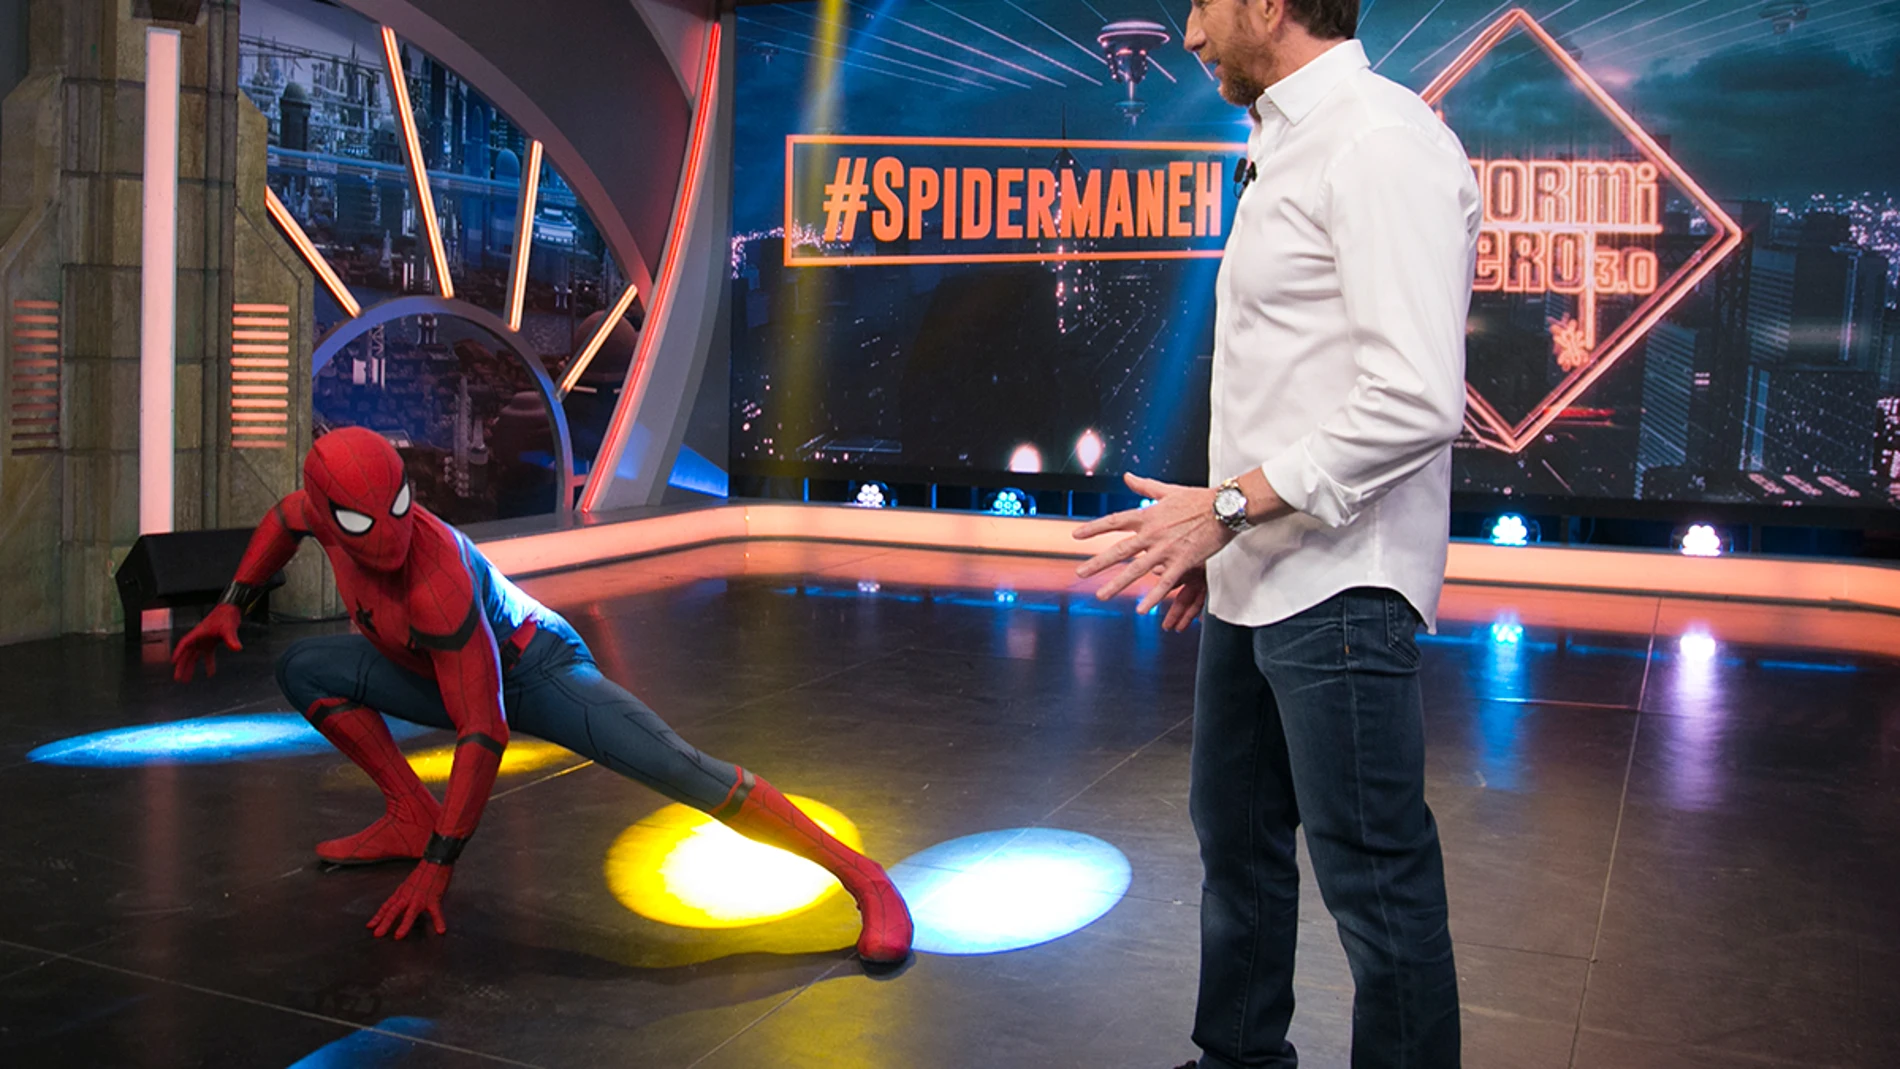 La increíble entrada de Tom Holland como Spiderman al plató de ‘El Hormiguero 3.0’